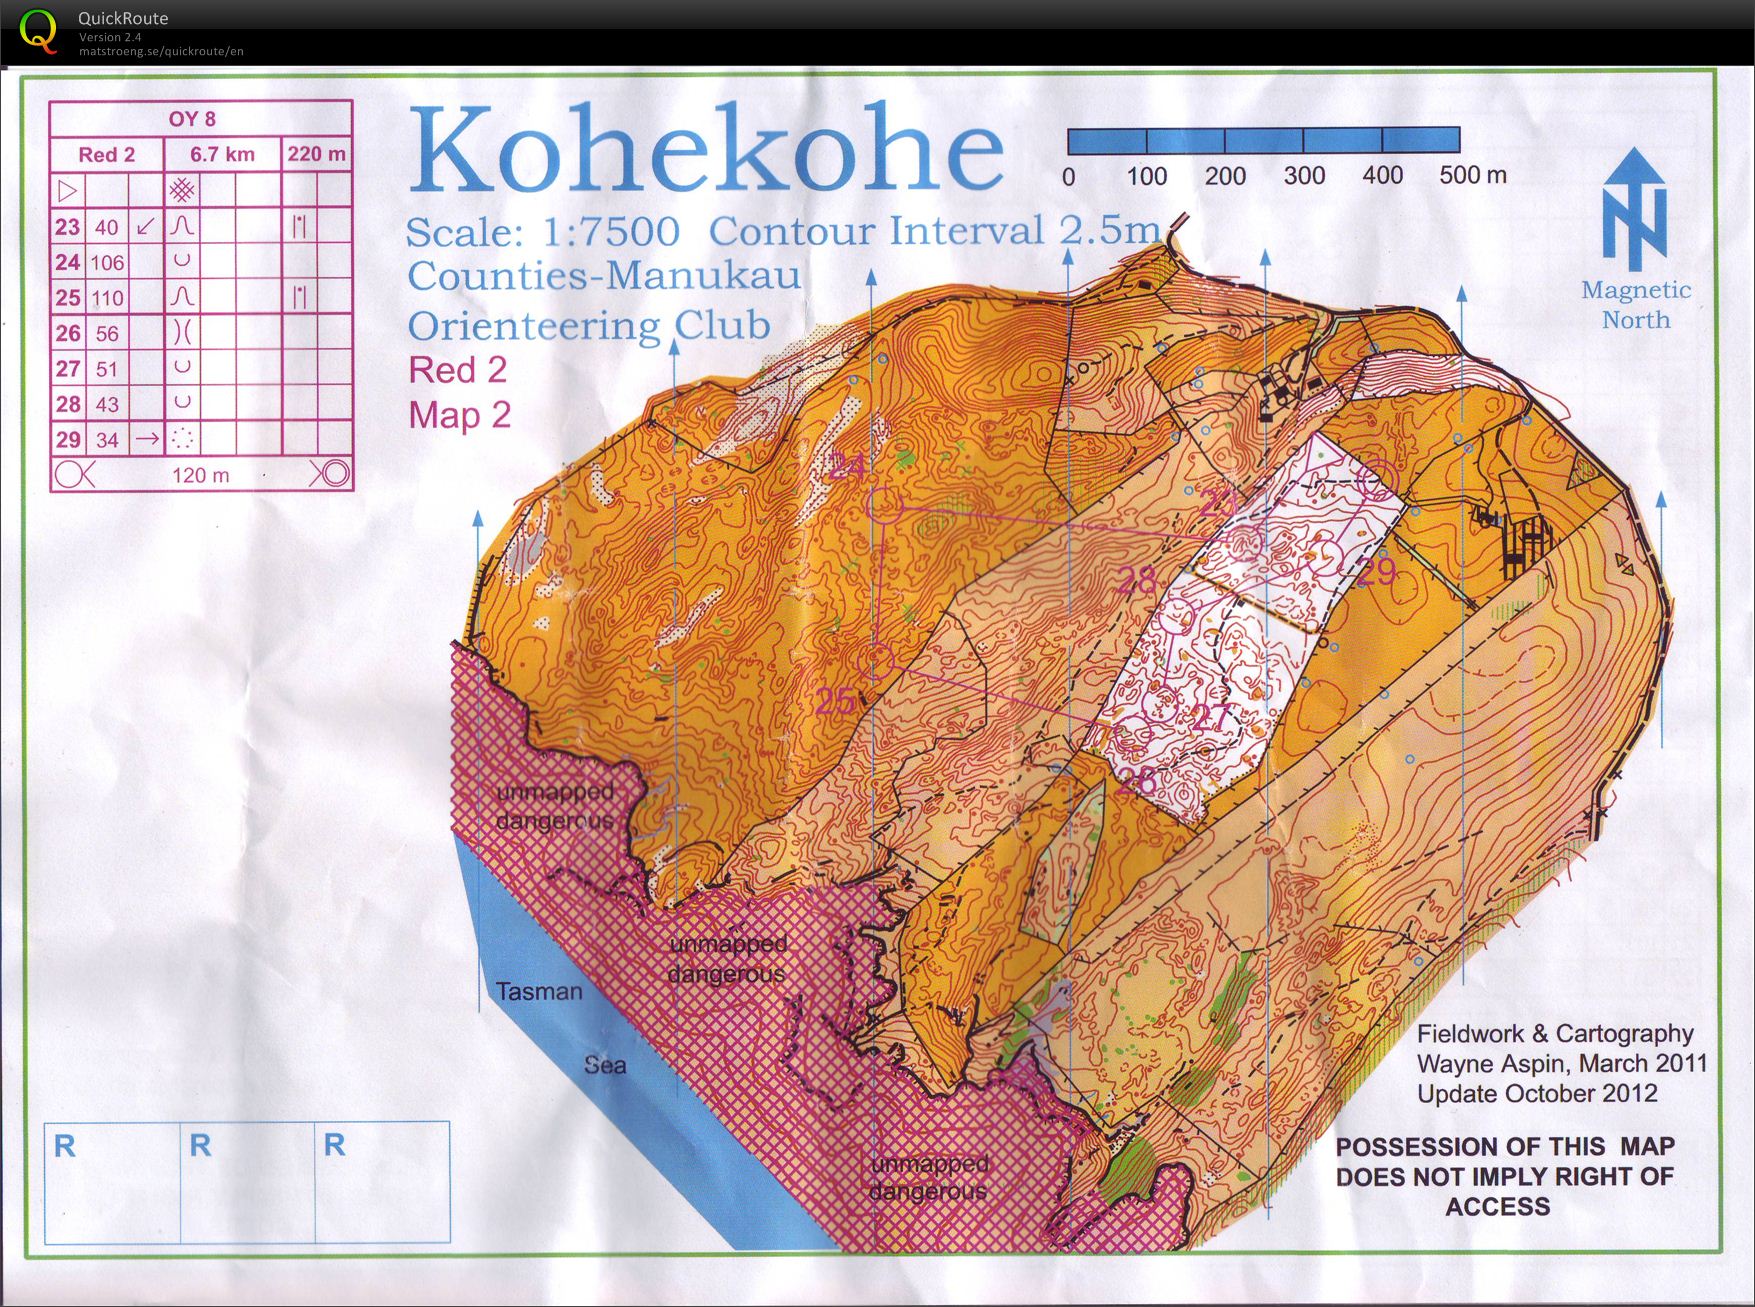 OY8 Kohekohe (part 2) (2012-10-27)